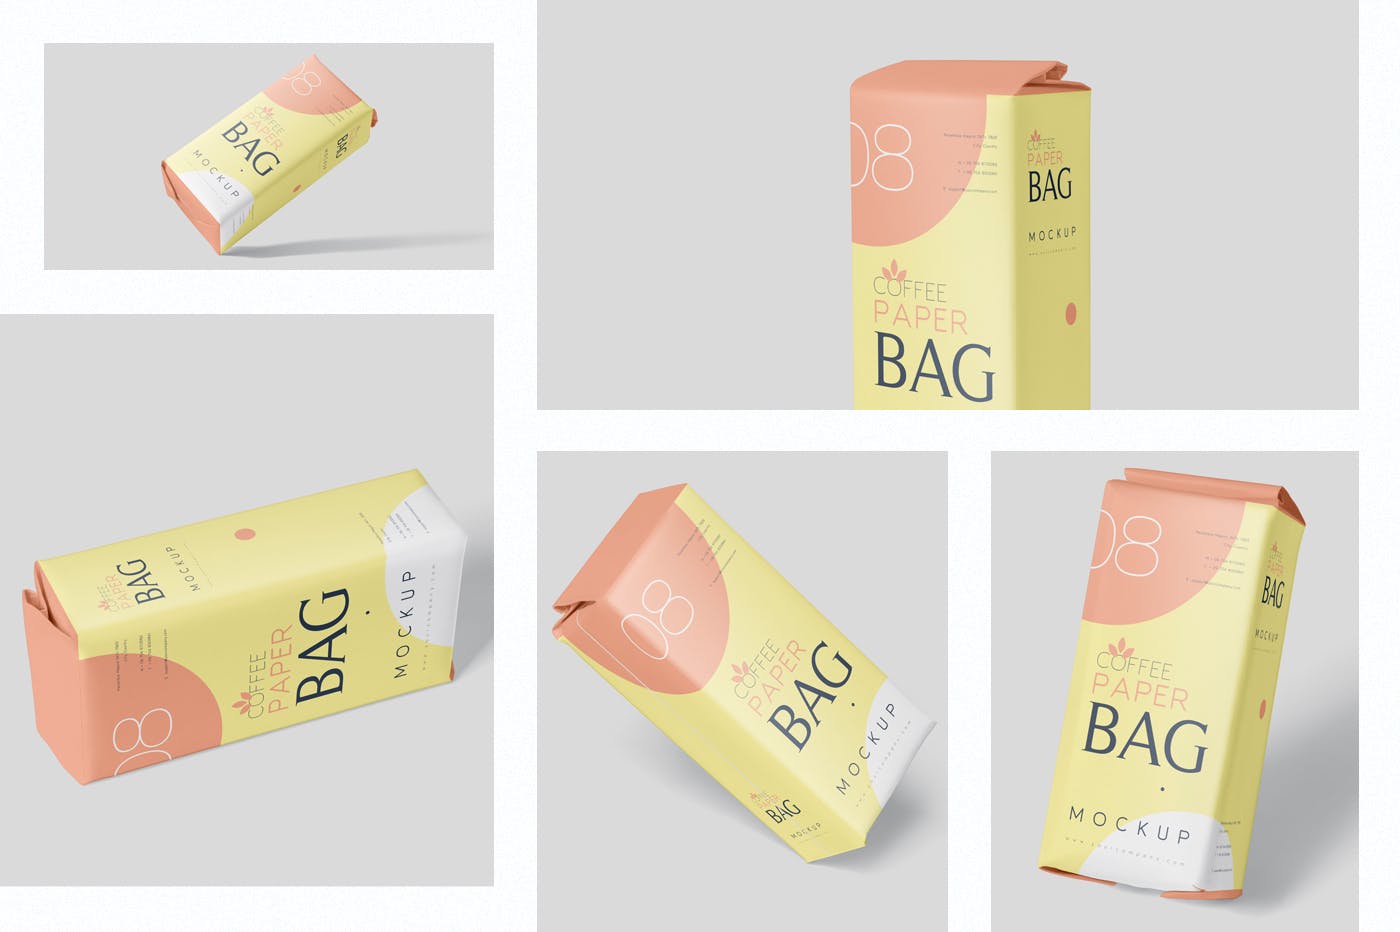 咖啡粉/咖啡豆纸袋包装素材中国精选模板 Coffee Paper Bag Mockup Set插图(1)